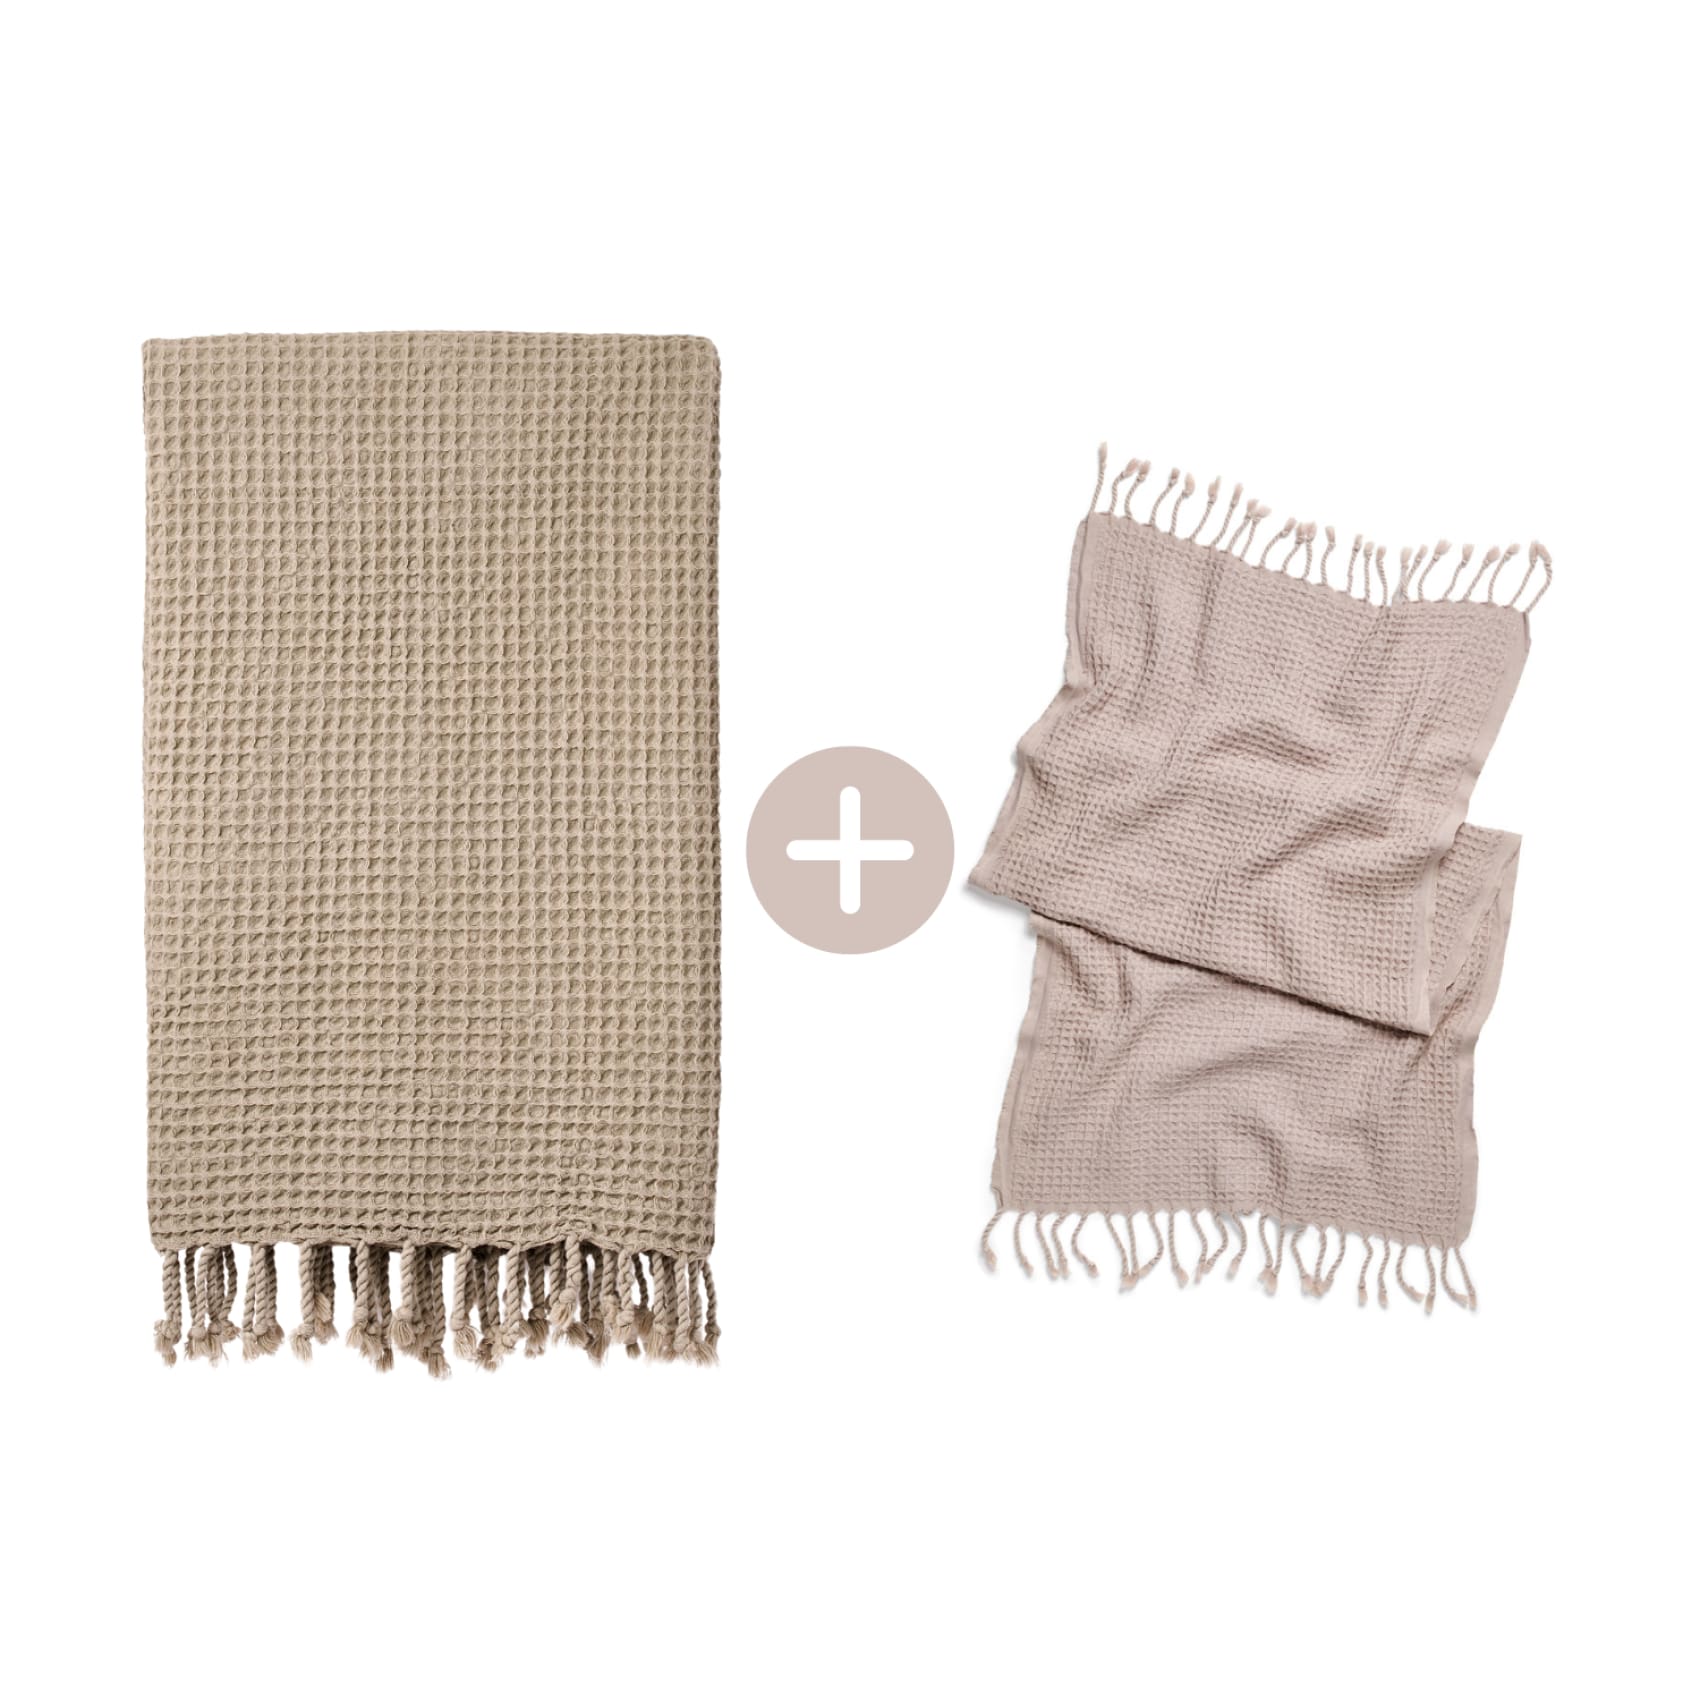 Rulo Bath Set - Cotton Peshtemal & Hand/Hair Towel - Save £10